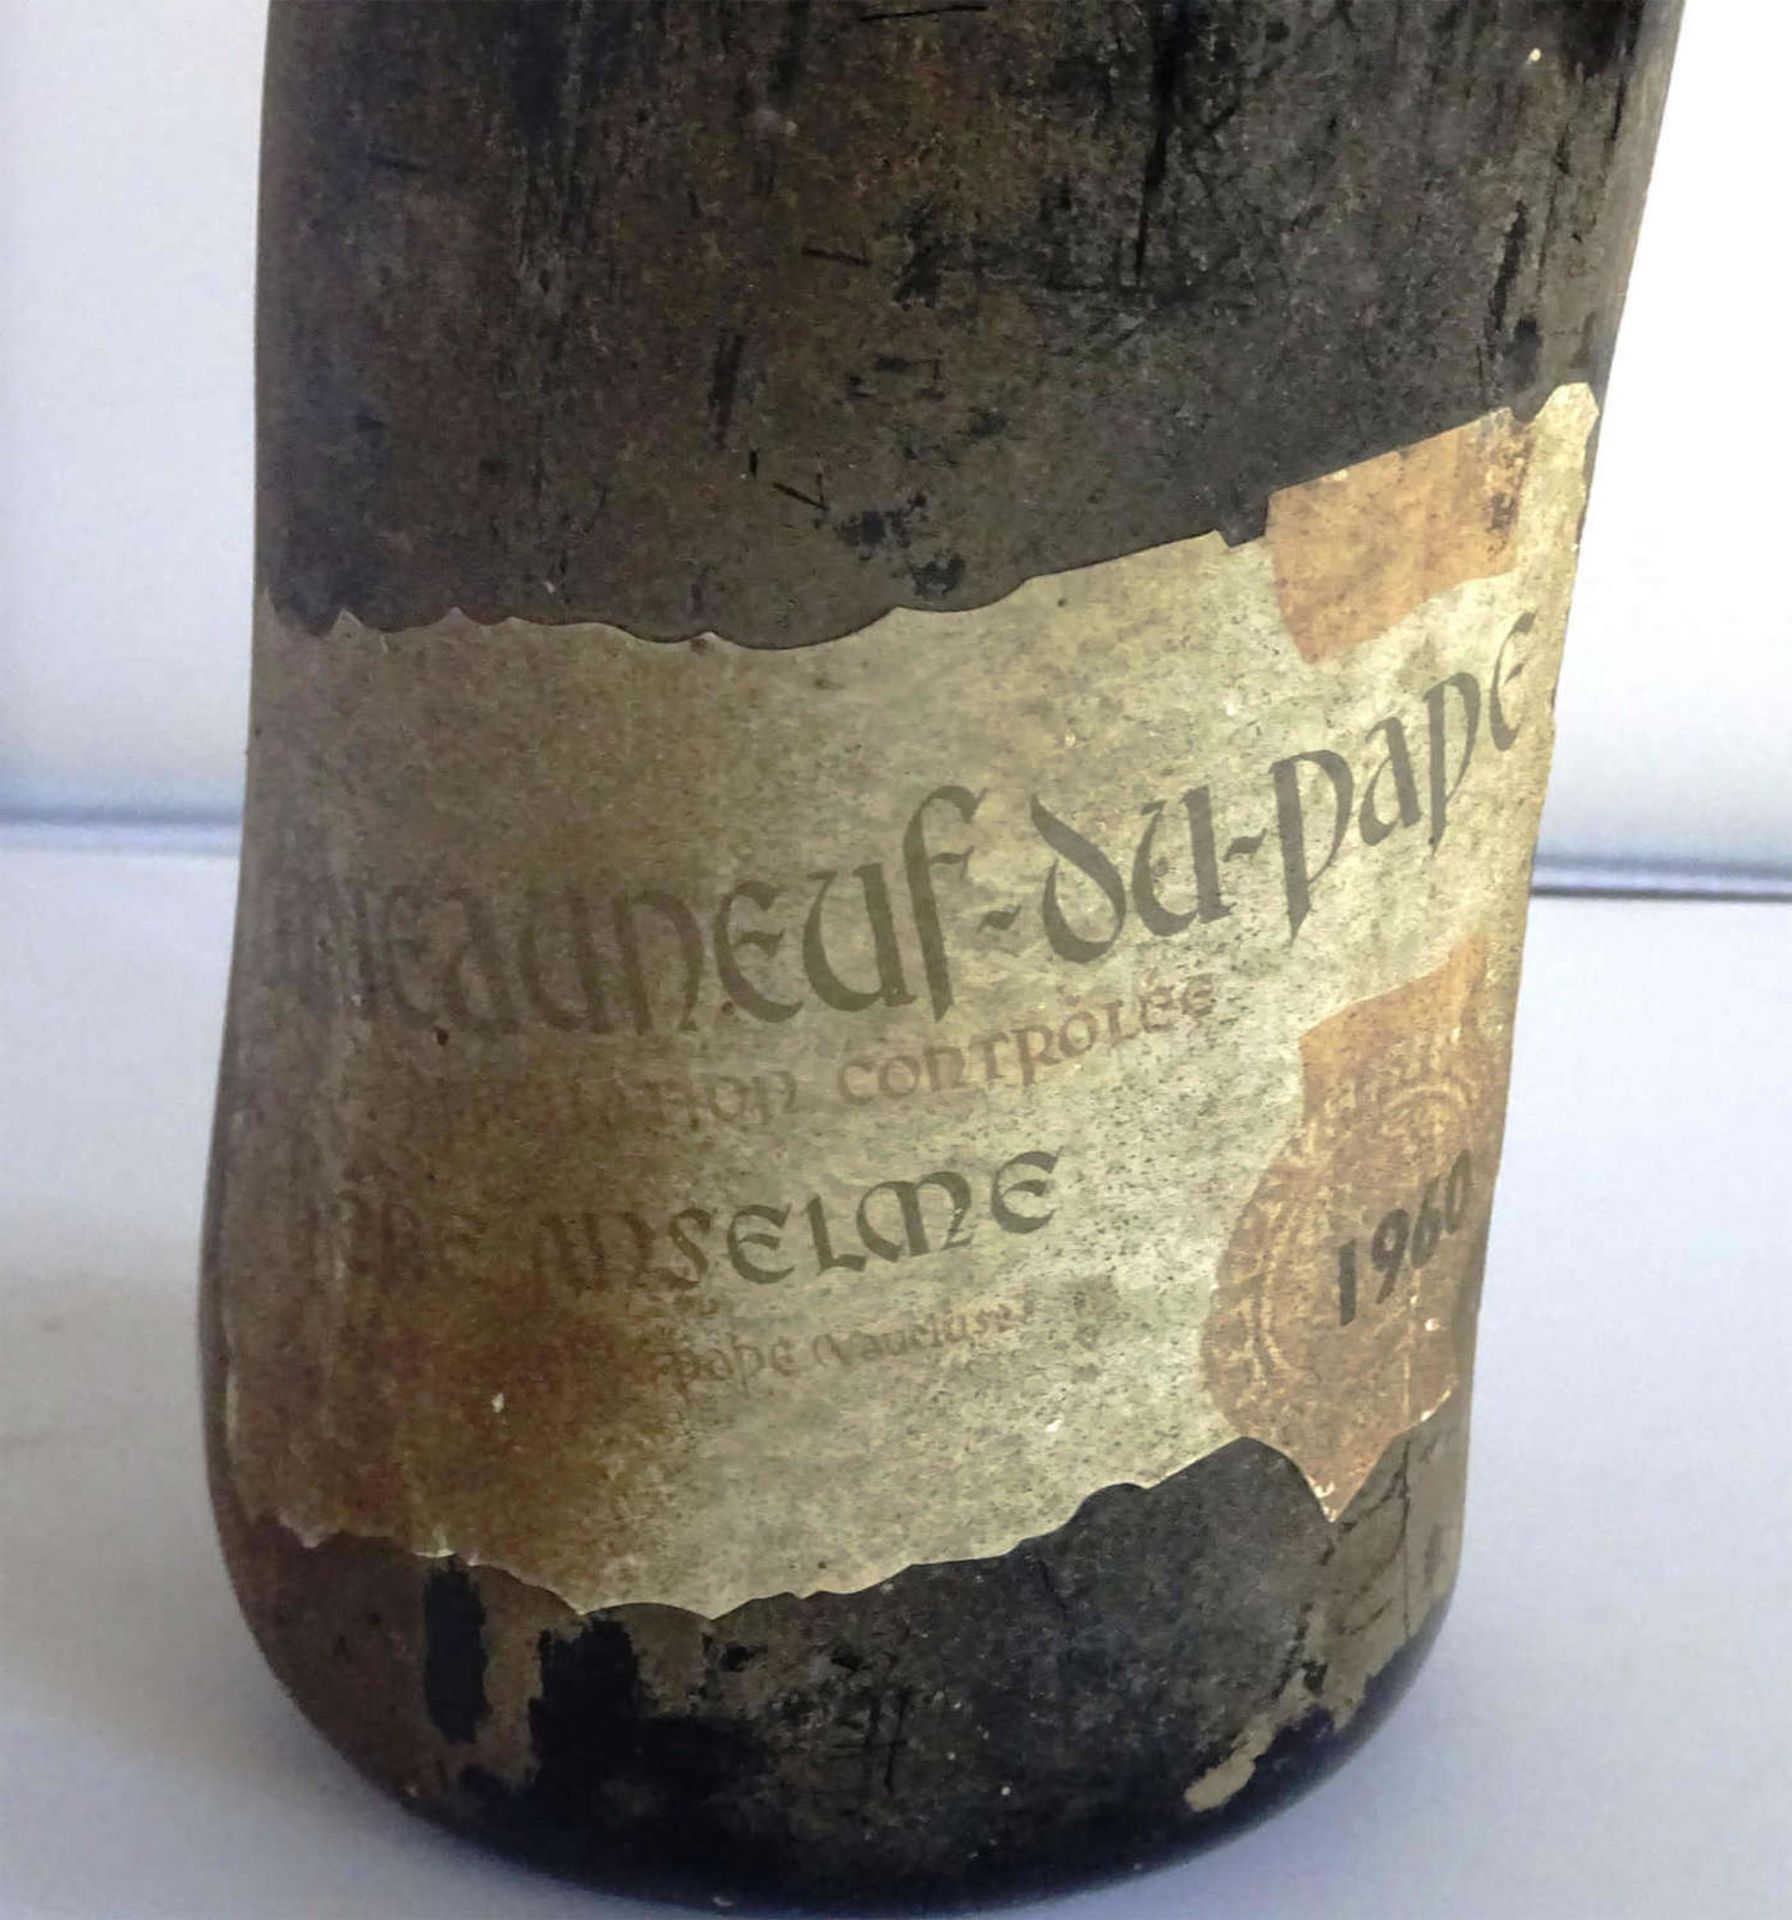 1 Flasche Chateauneuf du Pape 19601 bottle of Chateauneuf du Pape 1960 - Bild 2 aus 2